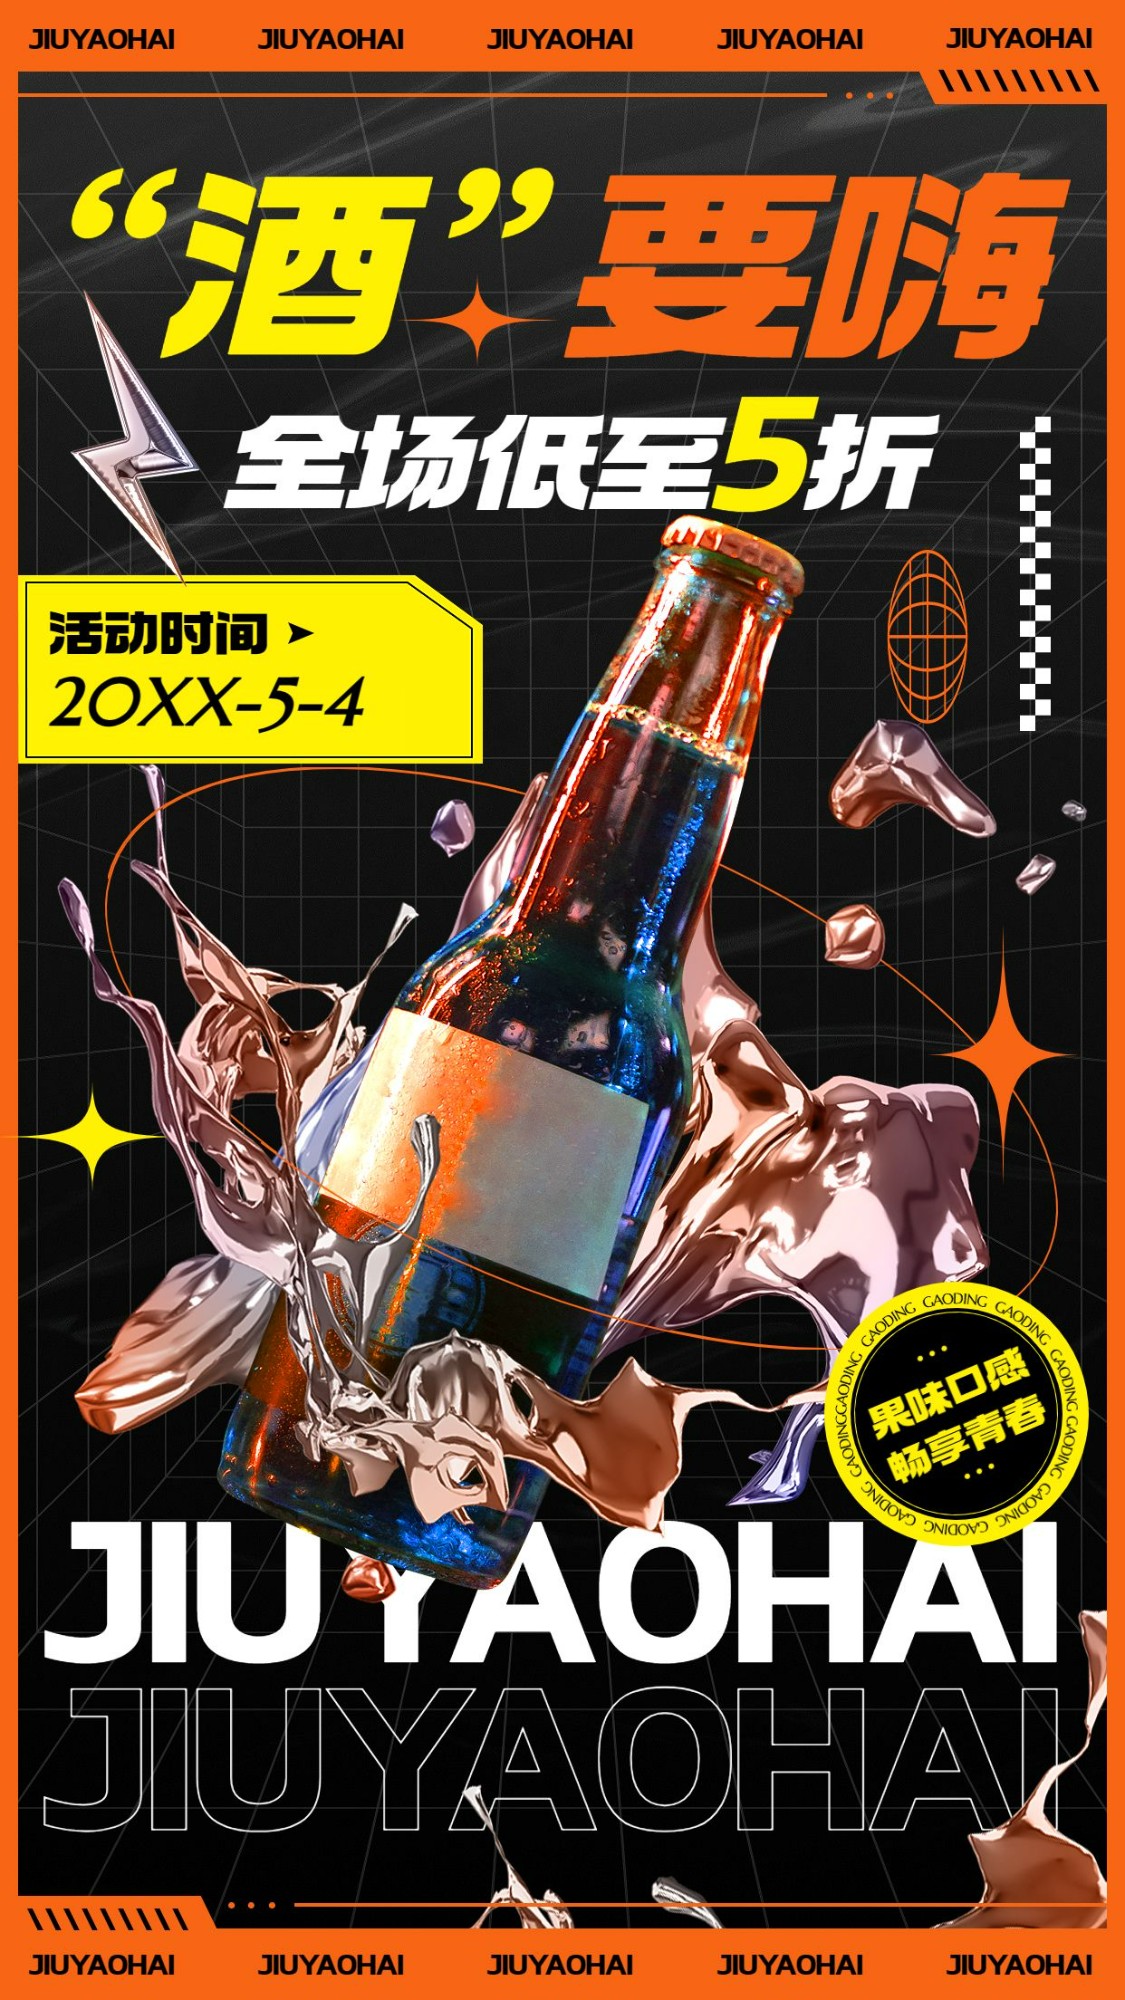 五四青年节果酒饮品产品营销手机海报预览效果